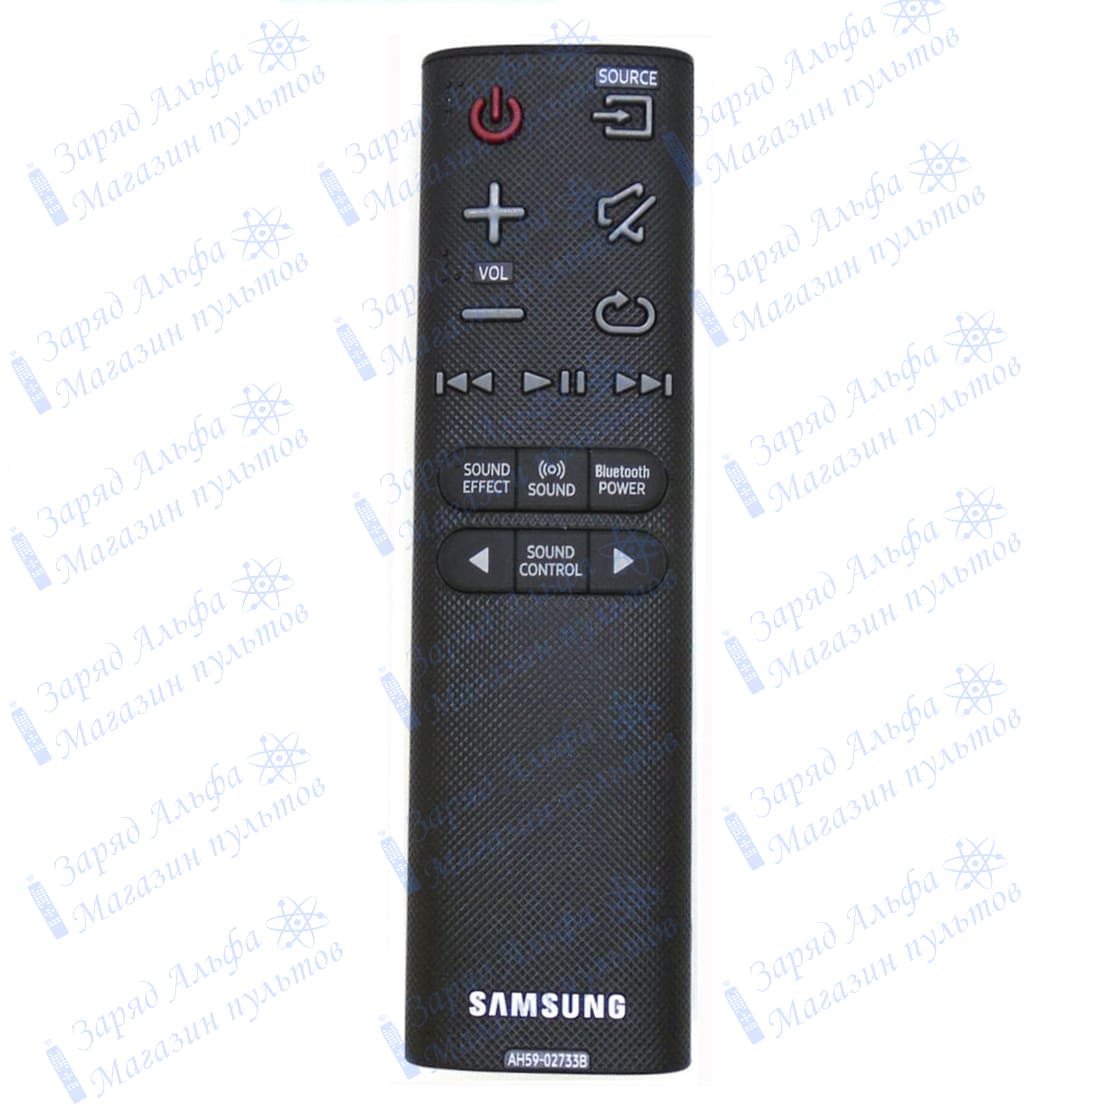 Пульт к Samsung AH59-02733B для звуковой панели (саундбара) HW-K550, HW-K360